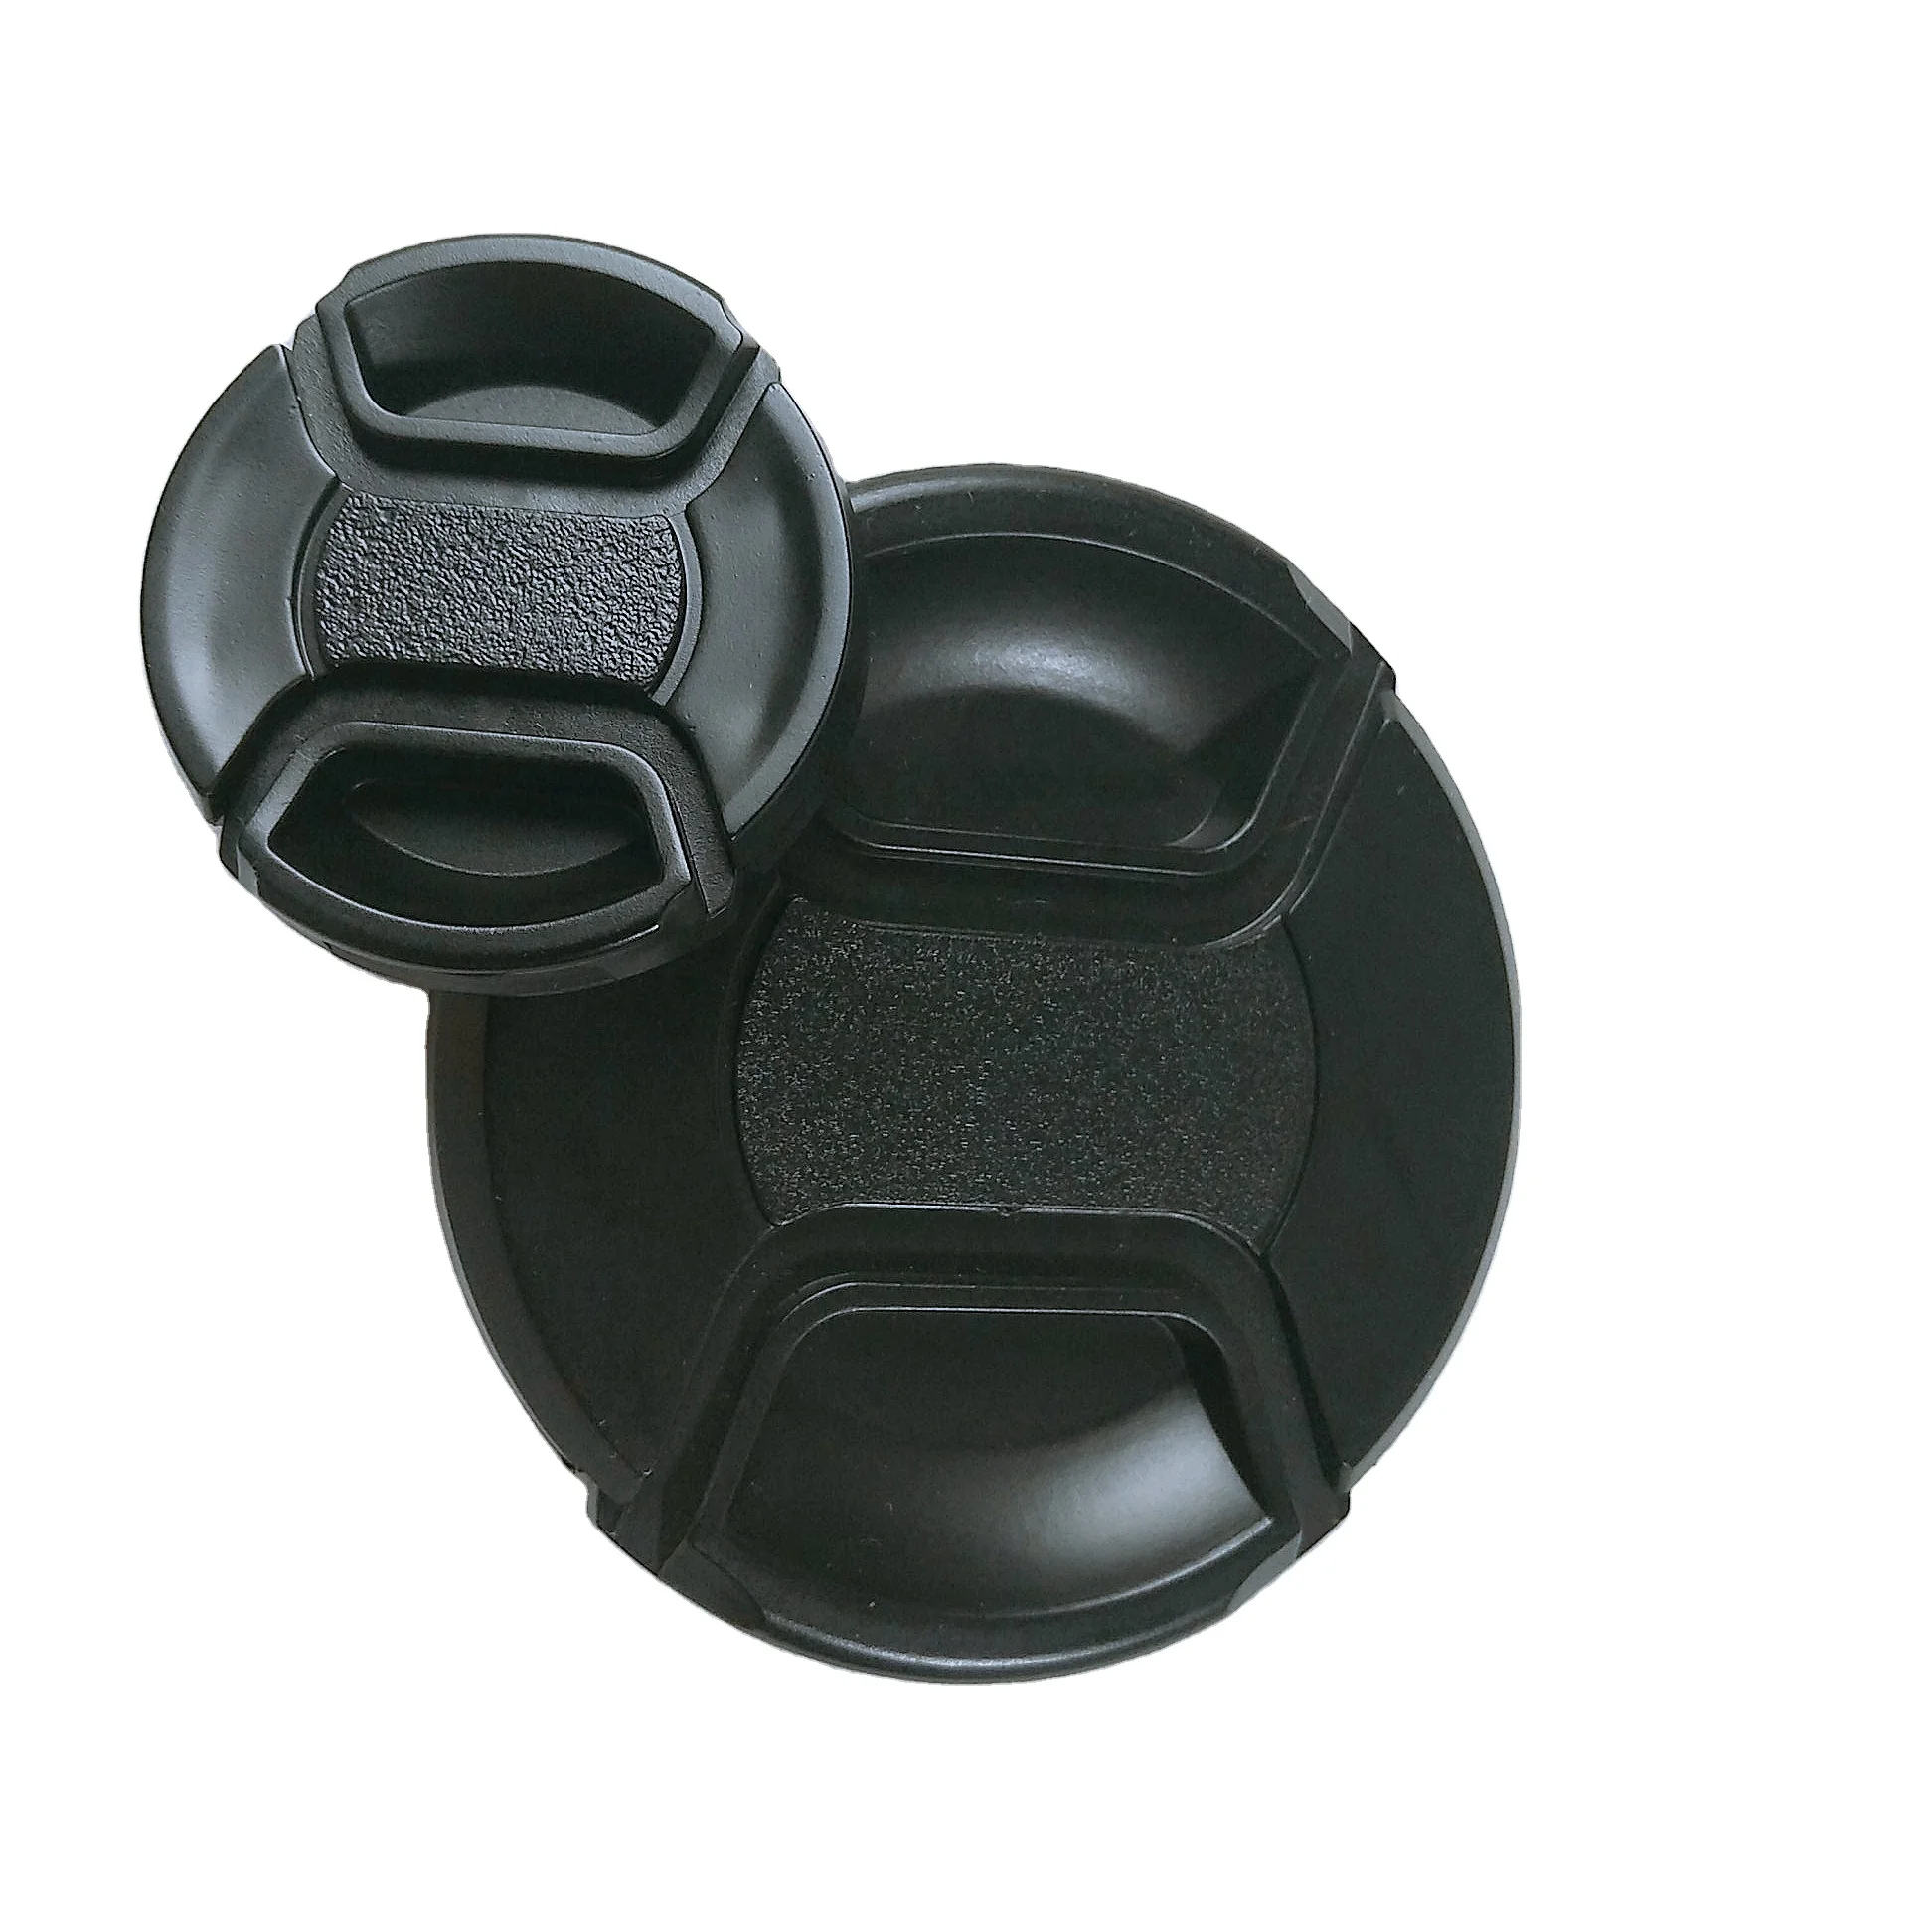 

MASSA Photographic equipment digital camera Accessories black plasti Middle pinch 77mm camara lens cover cap